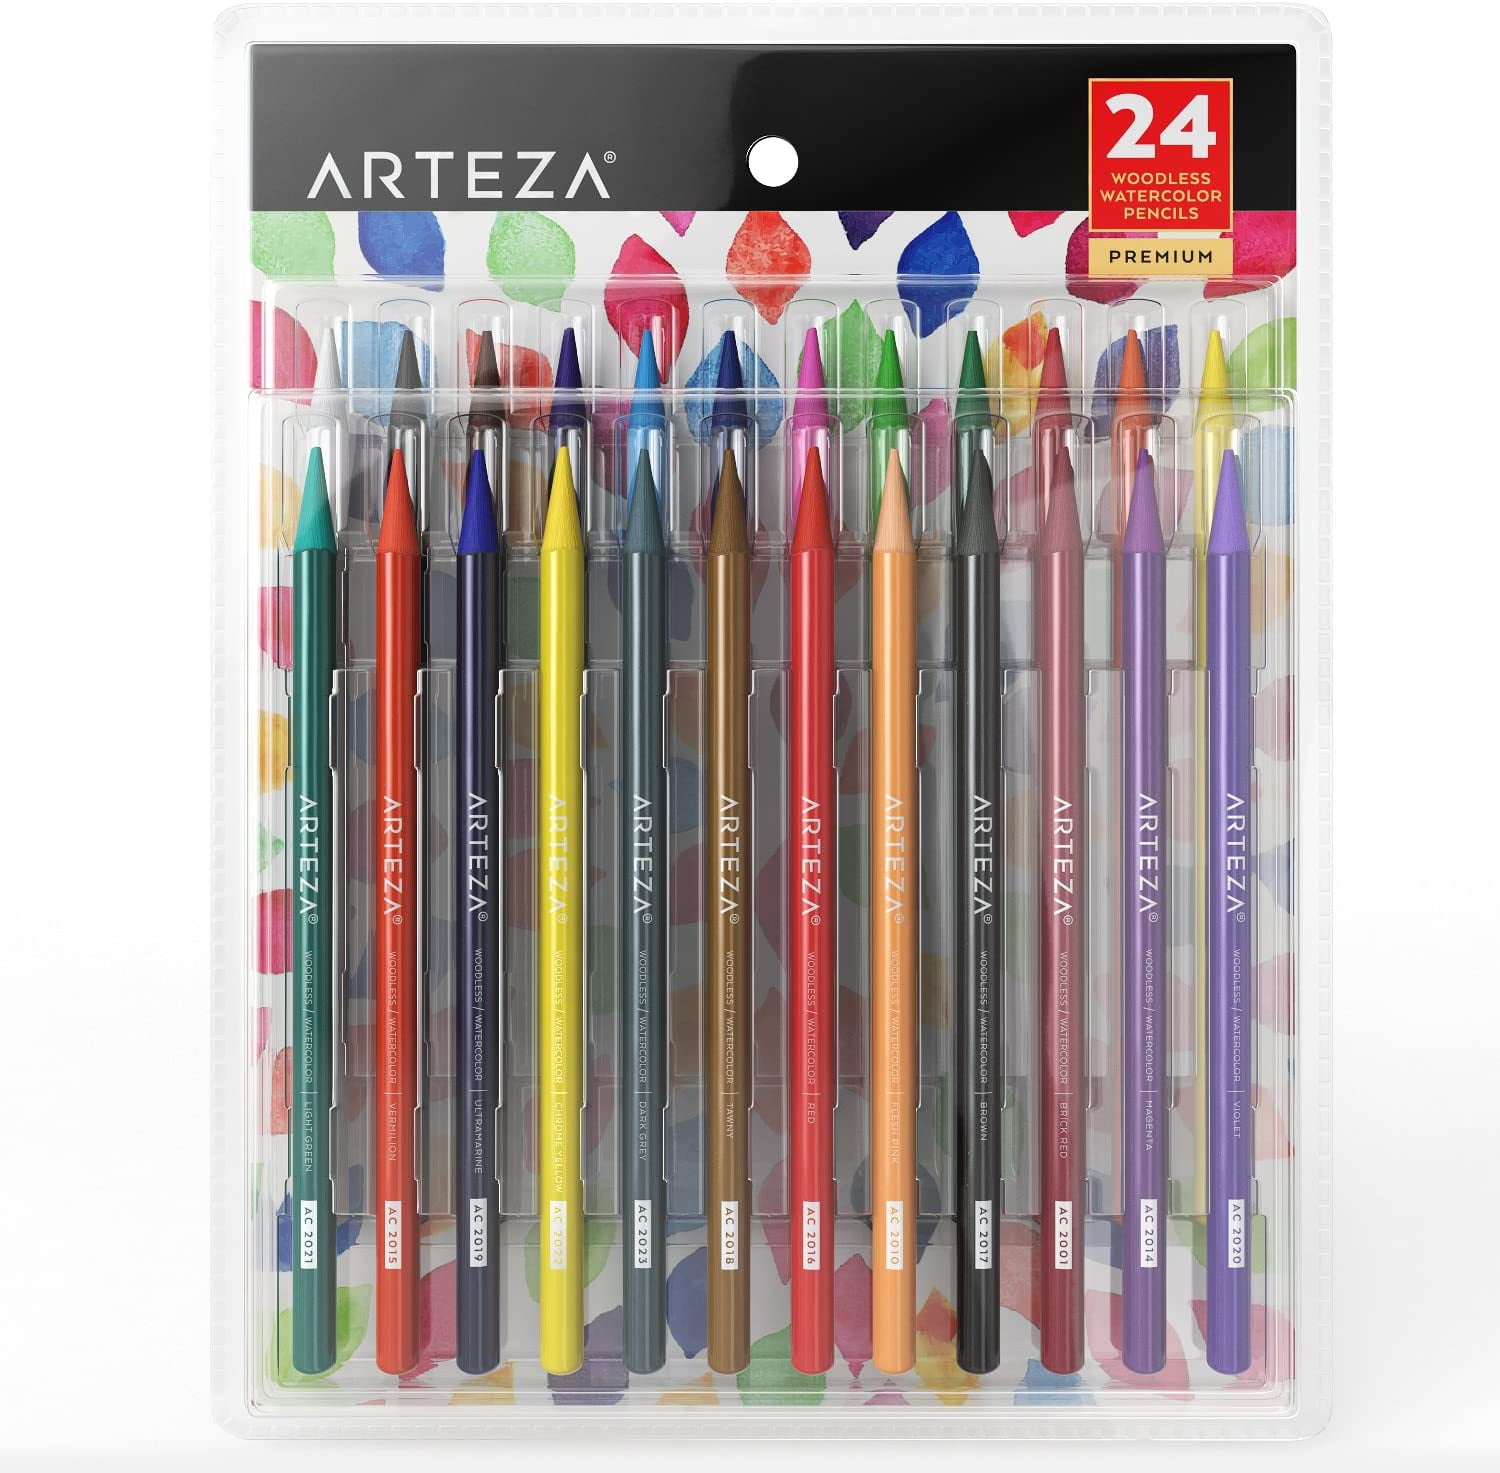 Caran d'Ache Supracolor Soft Aquarelle Pencil Set - Assorted Colors, Set of  12